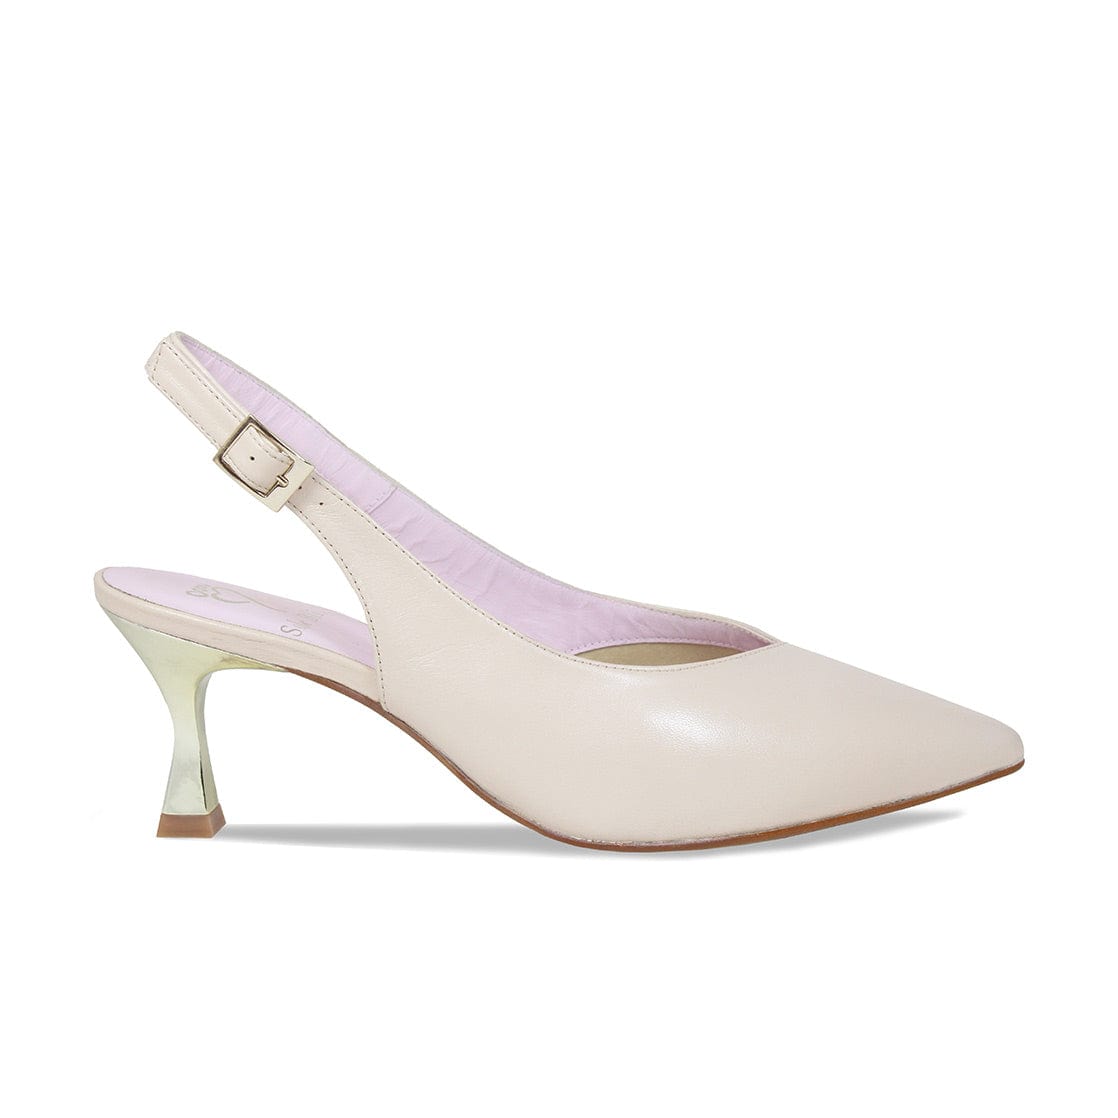 Buy Women Cream Sandals Online - 874523 | Van Heusen